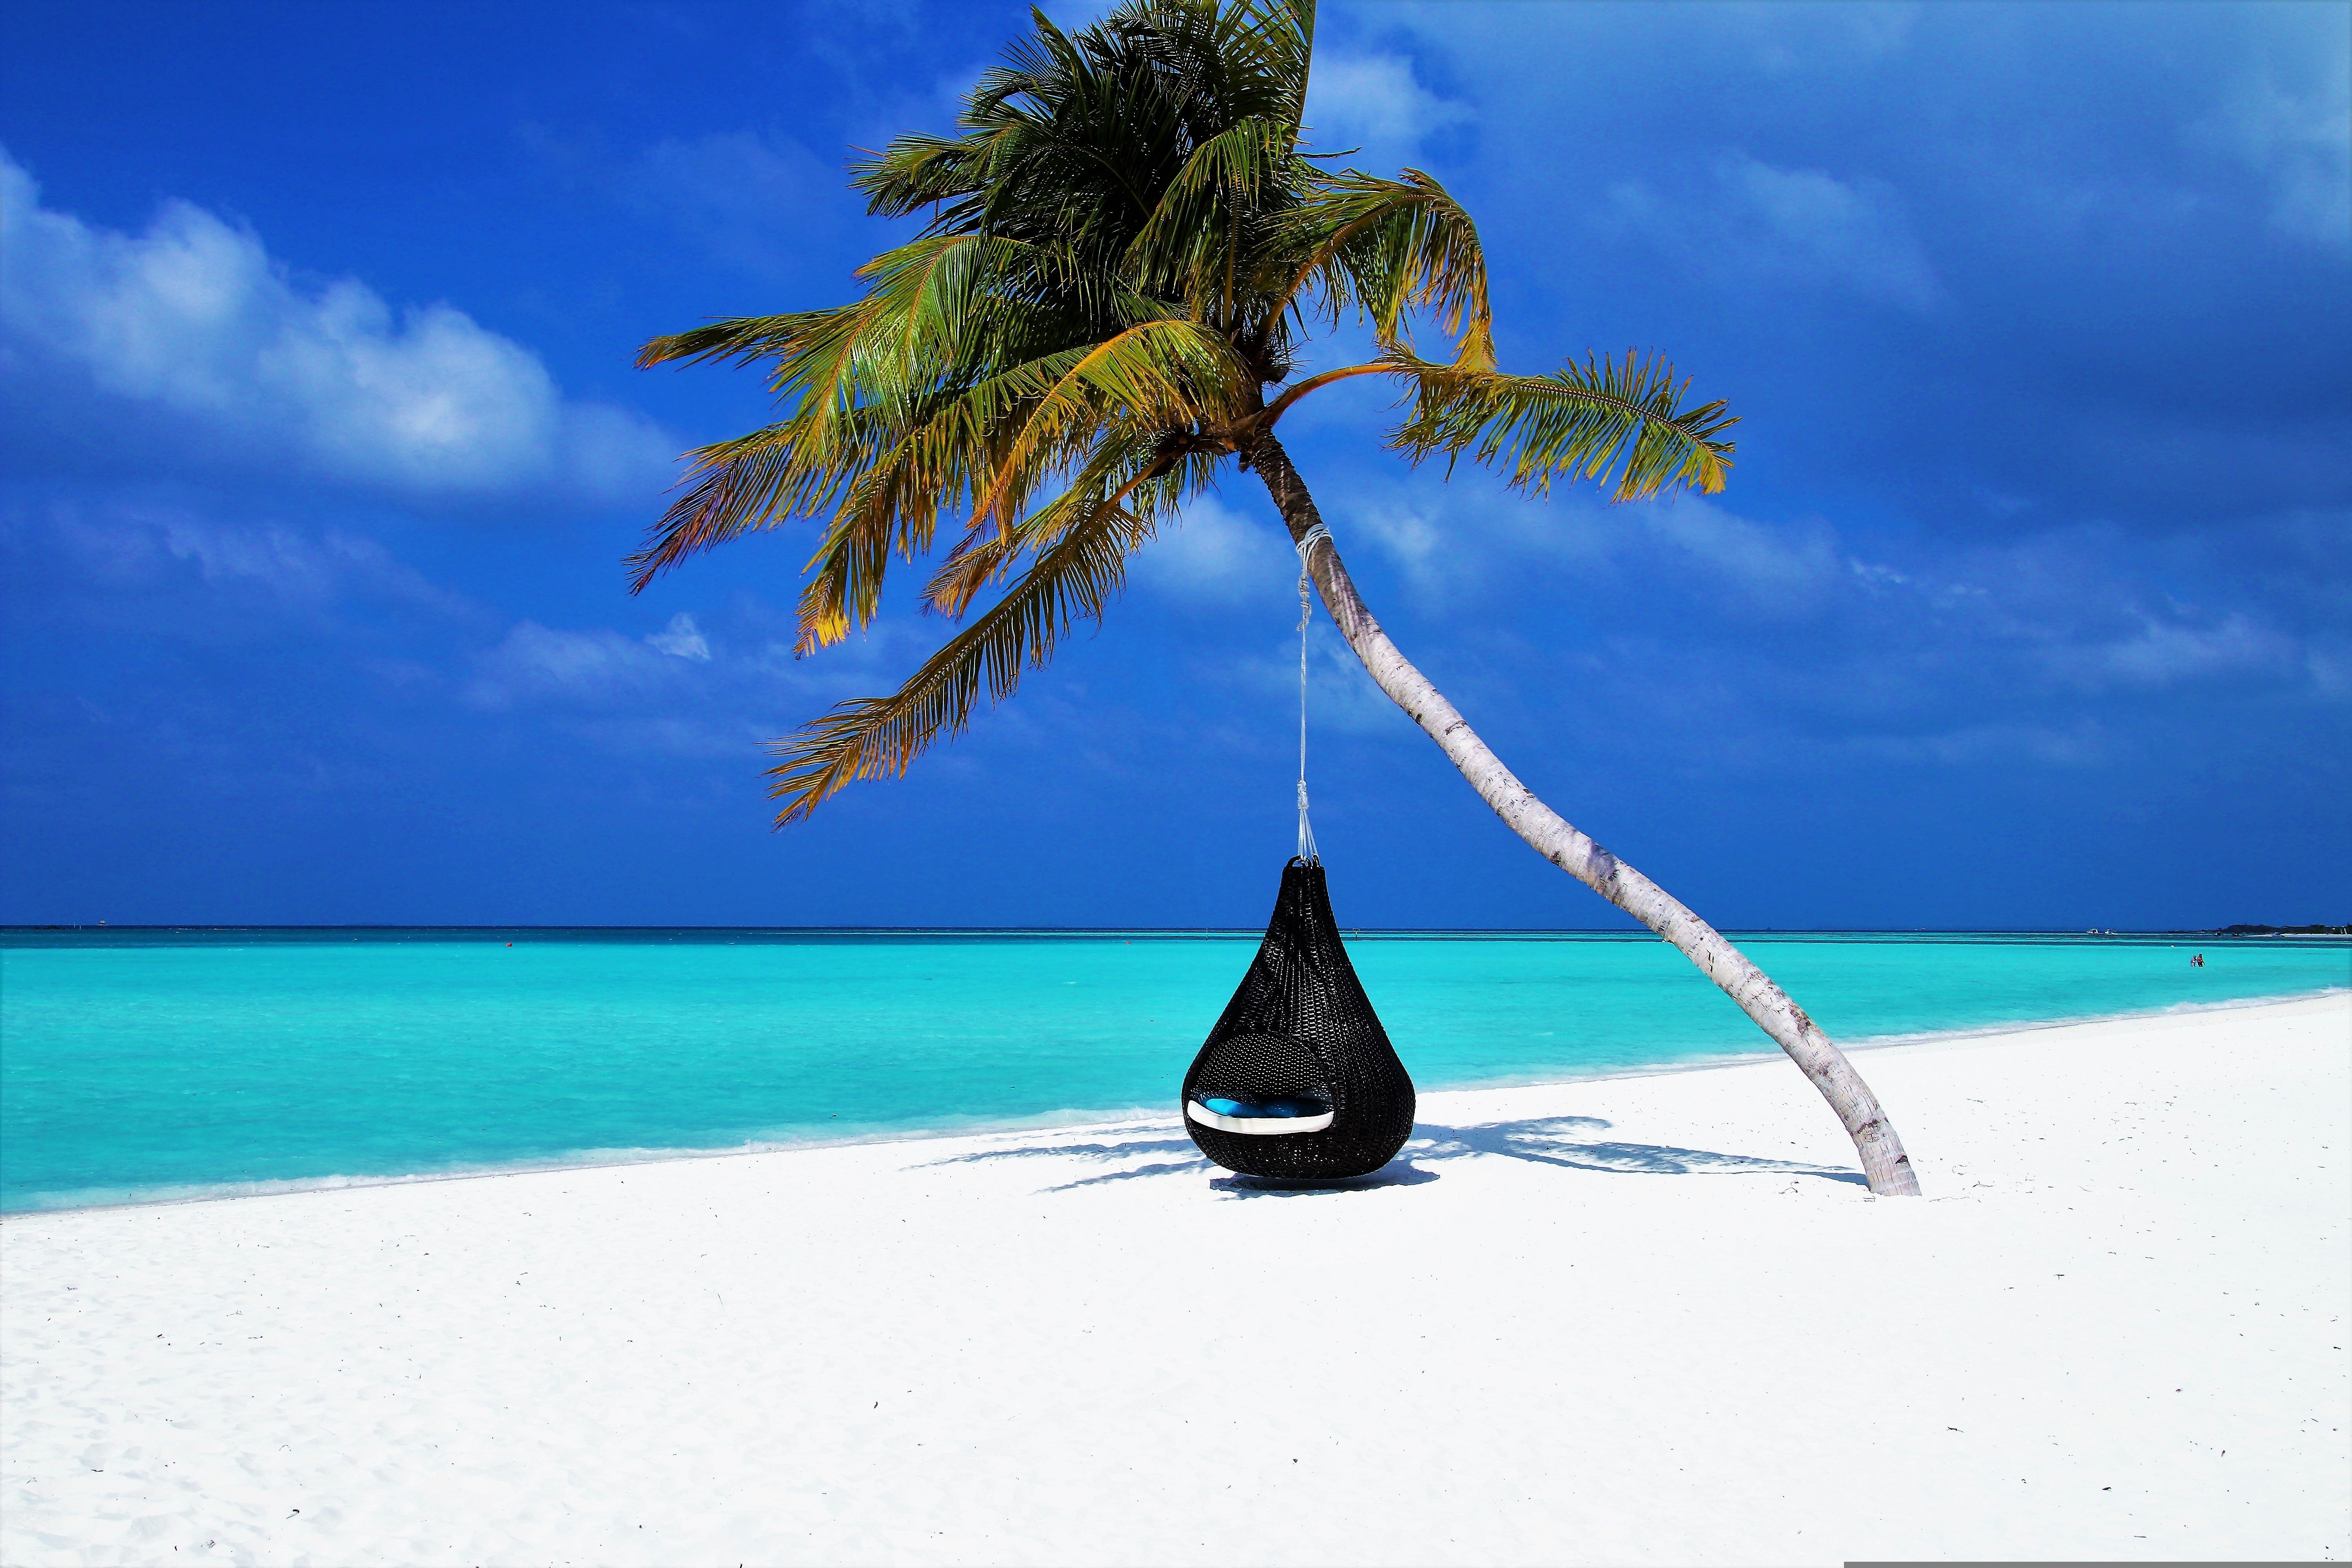 Zastaki.com - Черное подвесное кресло на пальме на тропическом пляже